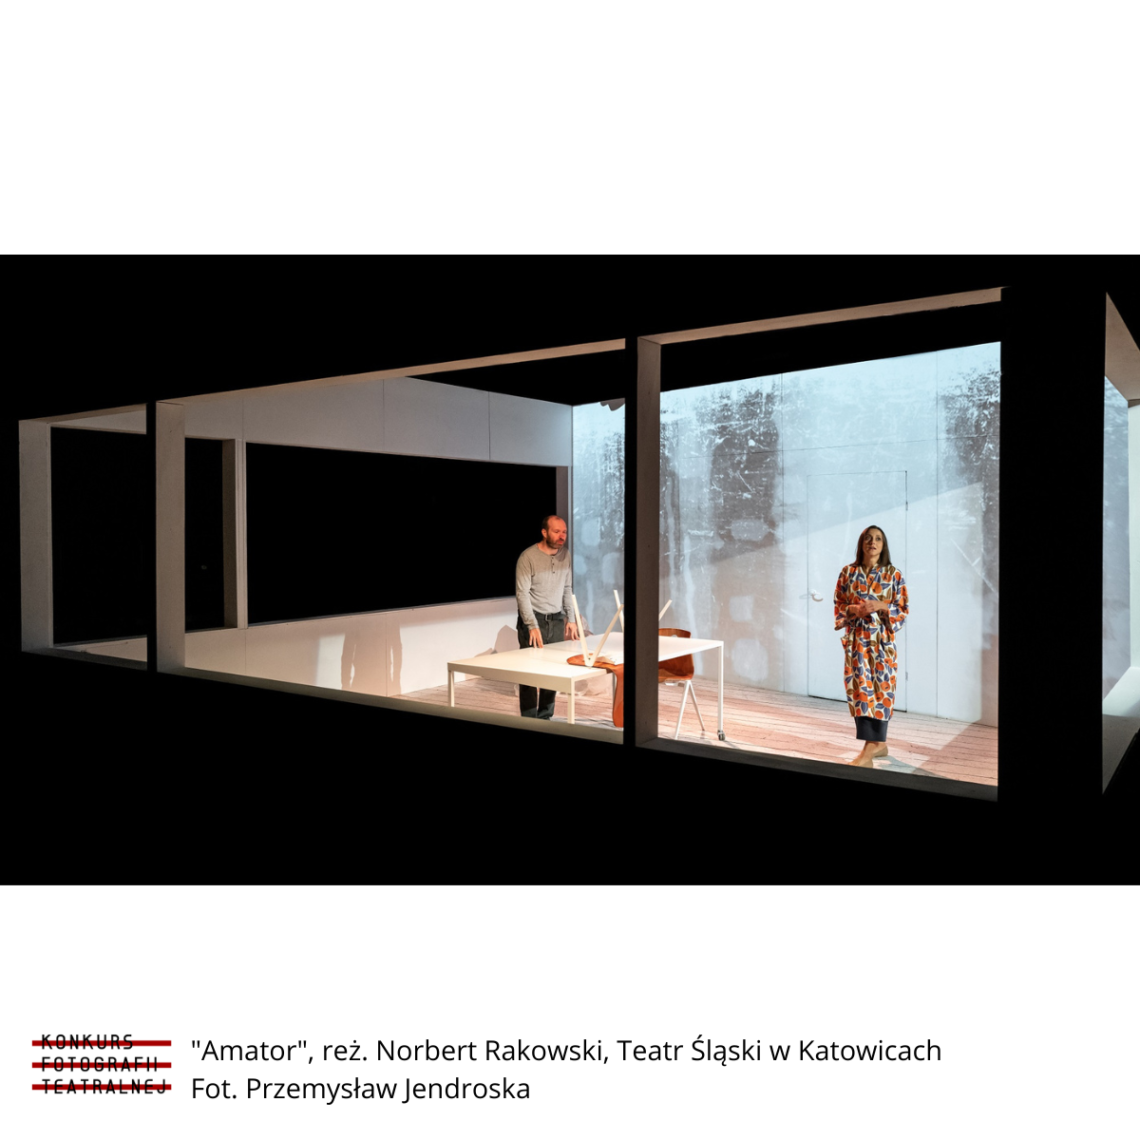 Kadr ze spektaklu Amator 2020: widok z zewnątrz do wnętrza pokoju, w centrum prostokątny stół, przy którym stoi mężczyzna, z prawej strony stoi kobieta ubrana na kolorowo